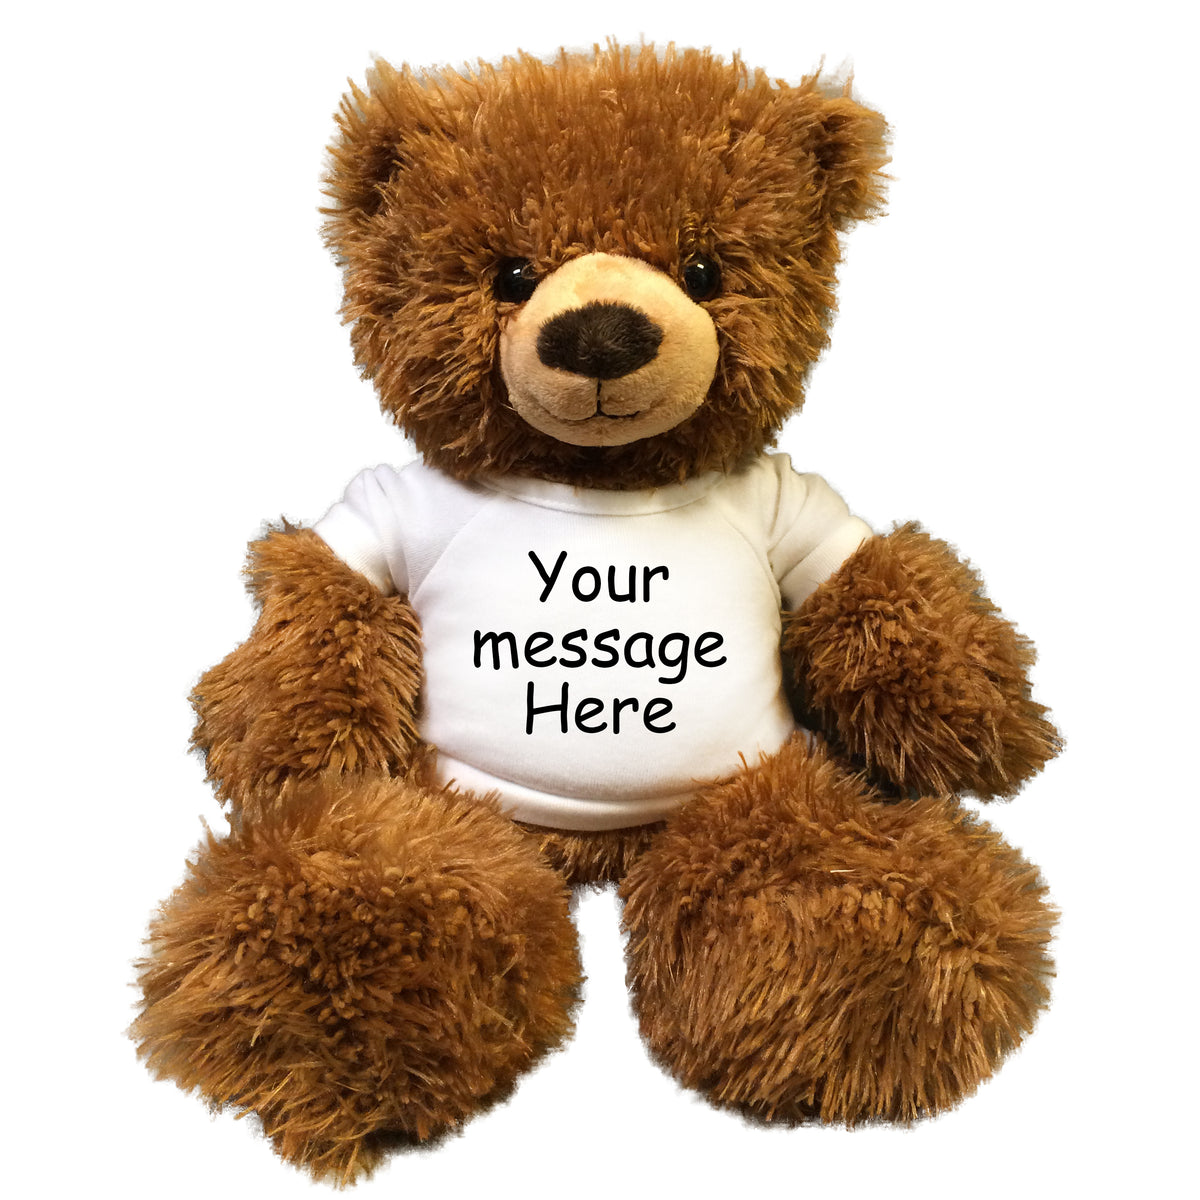 Personalized Teddy Bear - 14 inch Tummy Bear, Brown